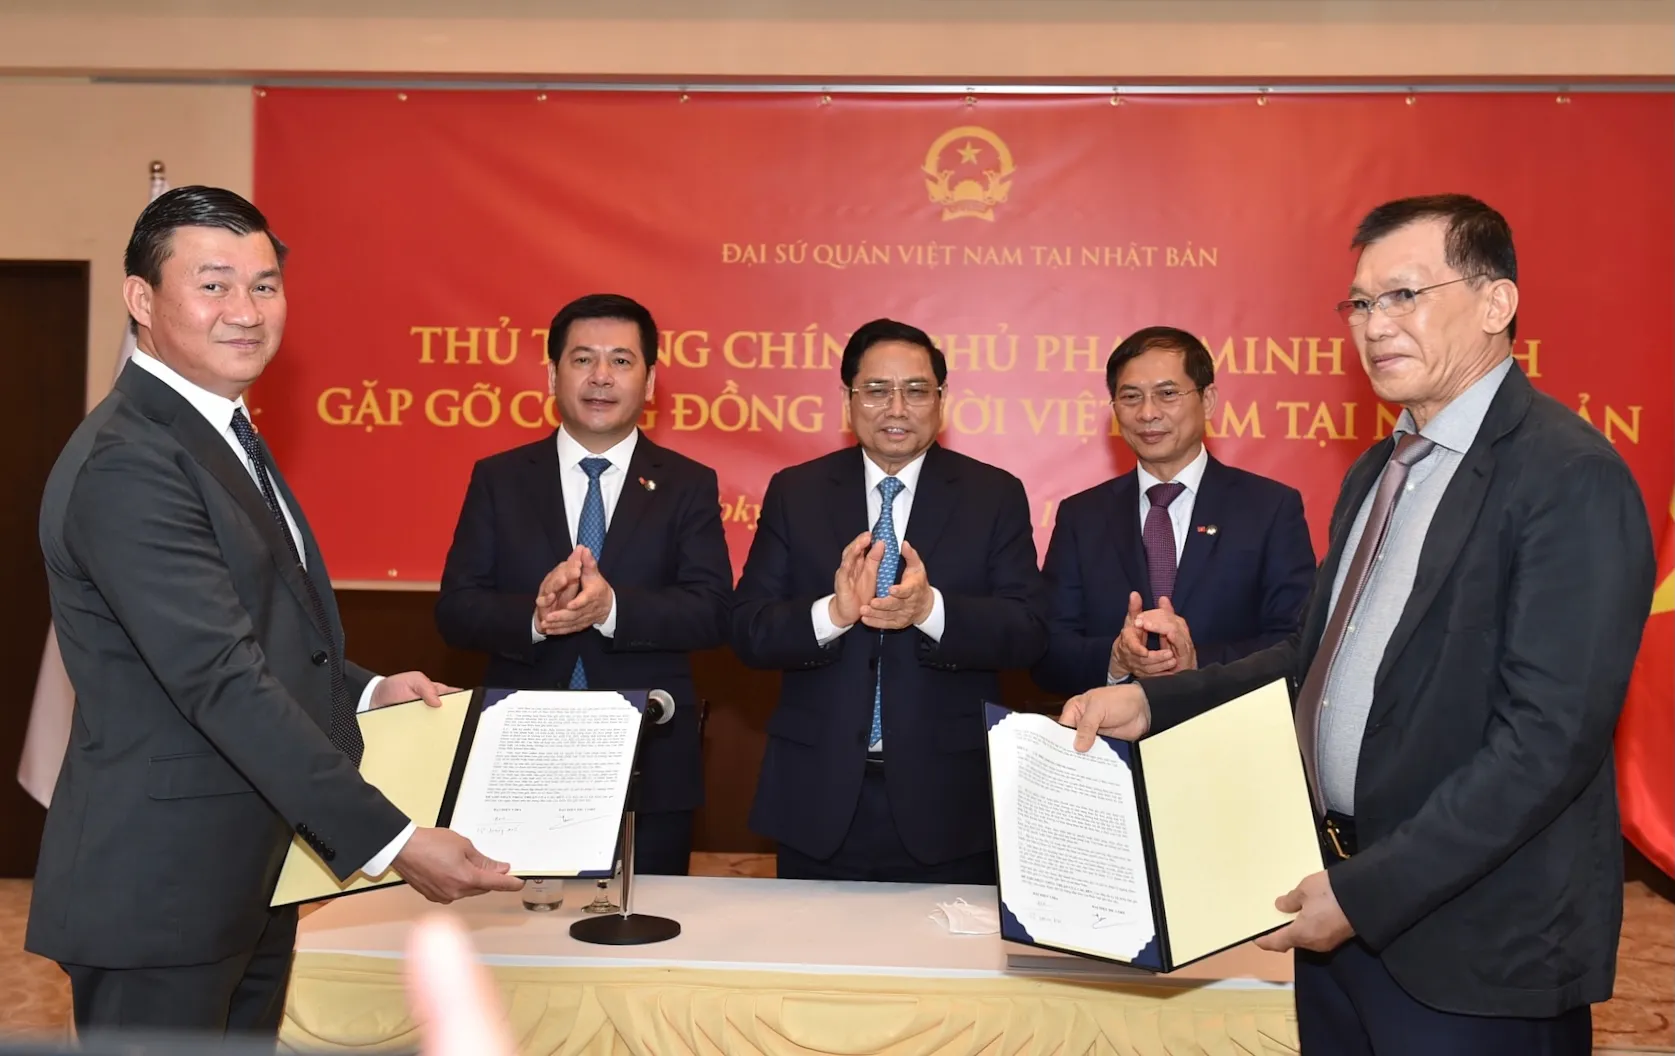 Thủ tướng chứng kiến trao văn bản hợp tác giữa công ty DIC và Hiệp hội Doanh nghiệp Việt Nam tại Nhật Bản. Ảnh: VGP